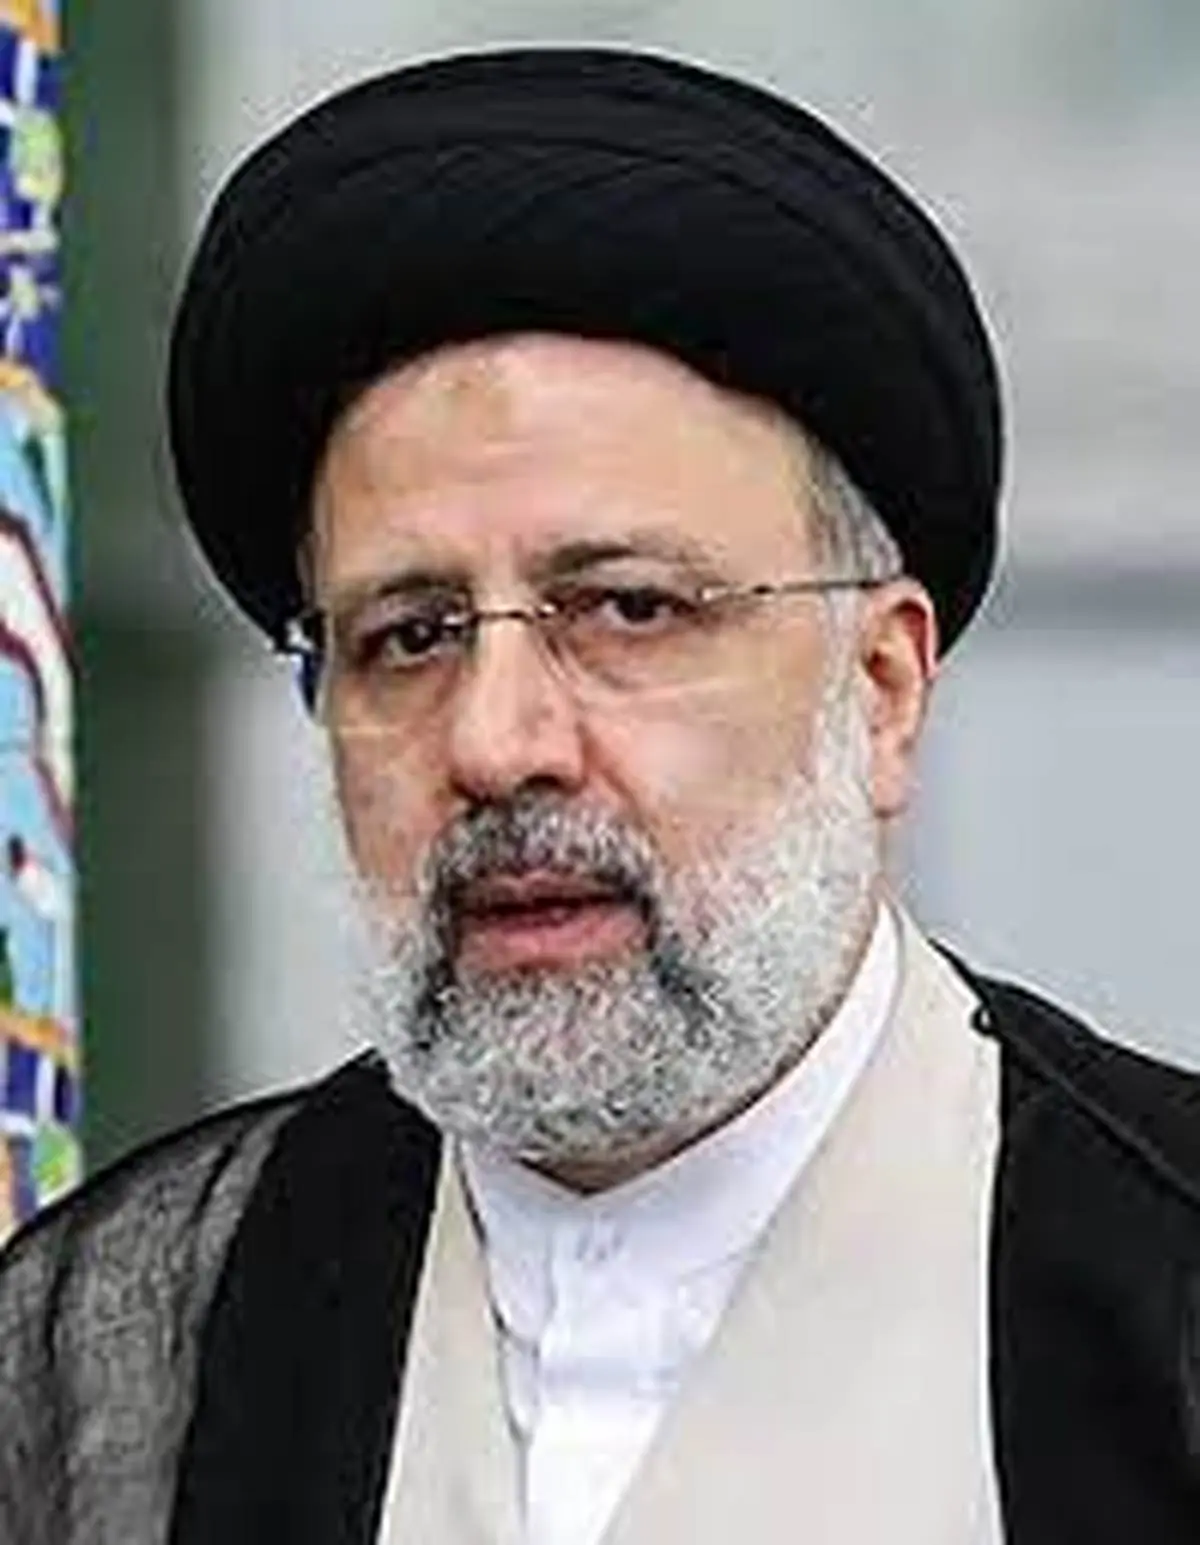  تبریک رئیس جمهور در پی موفقیت بزرگ به مقام معظم رهبری و مردم غیور ایران 